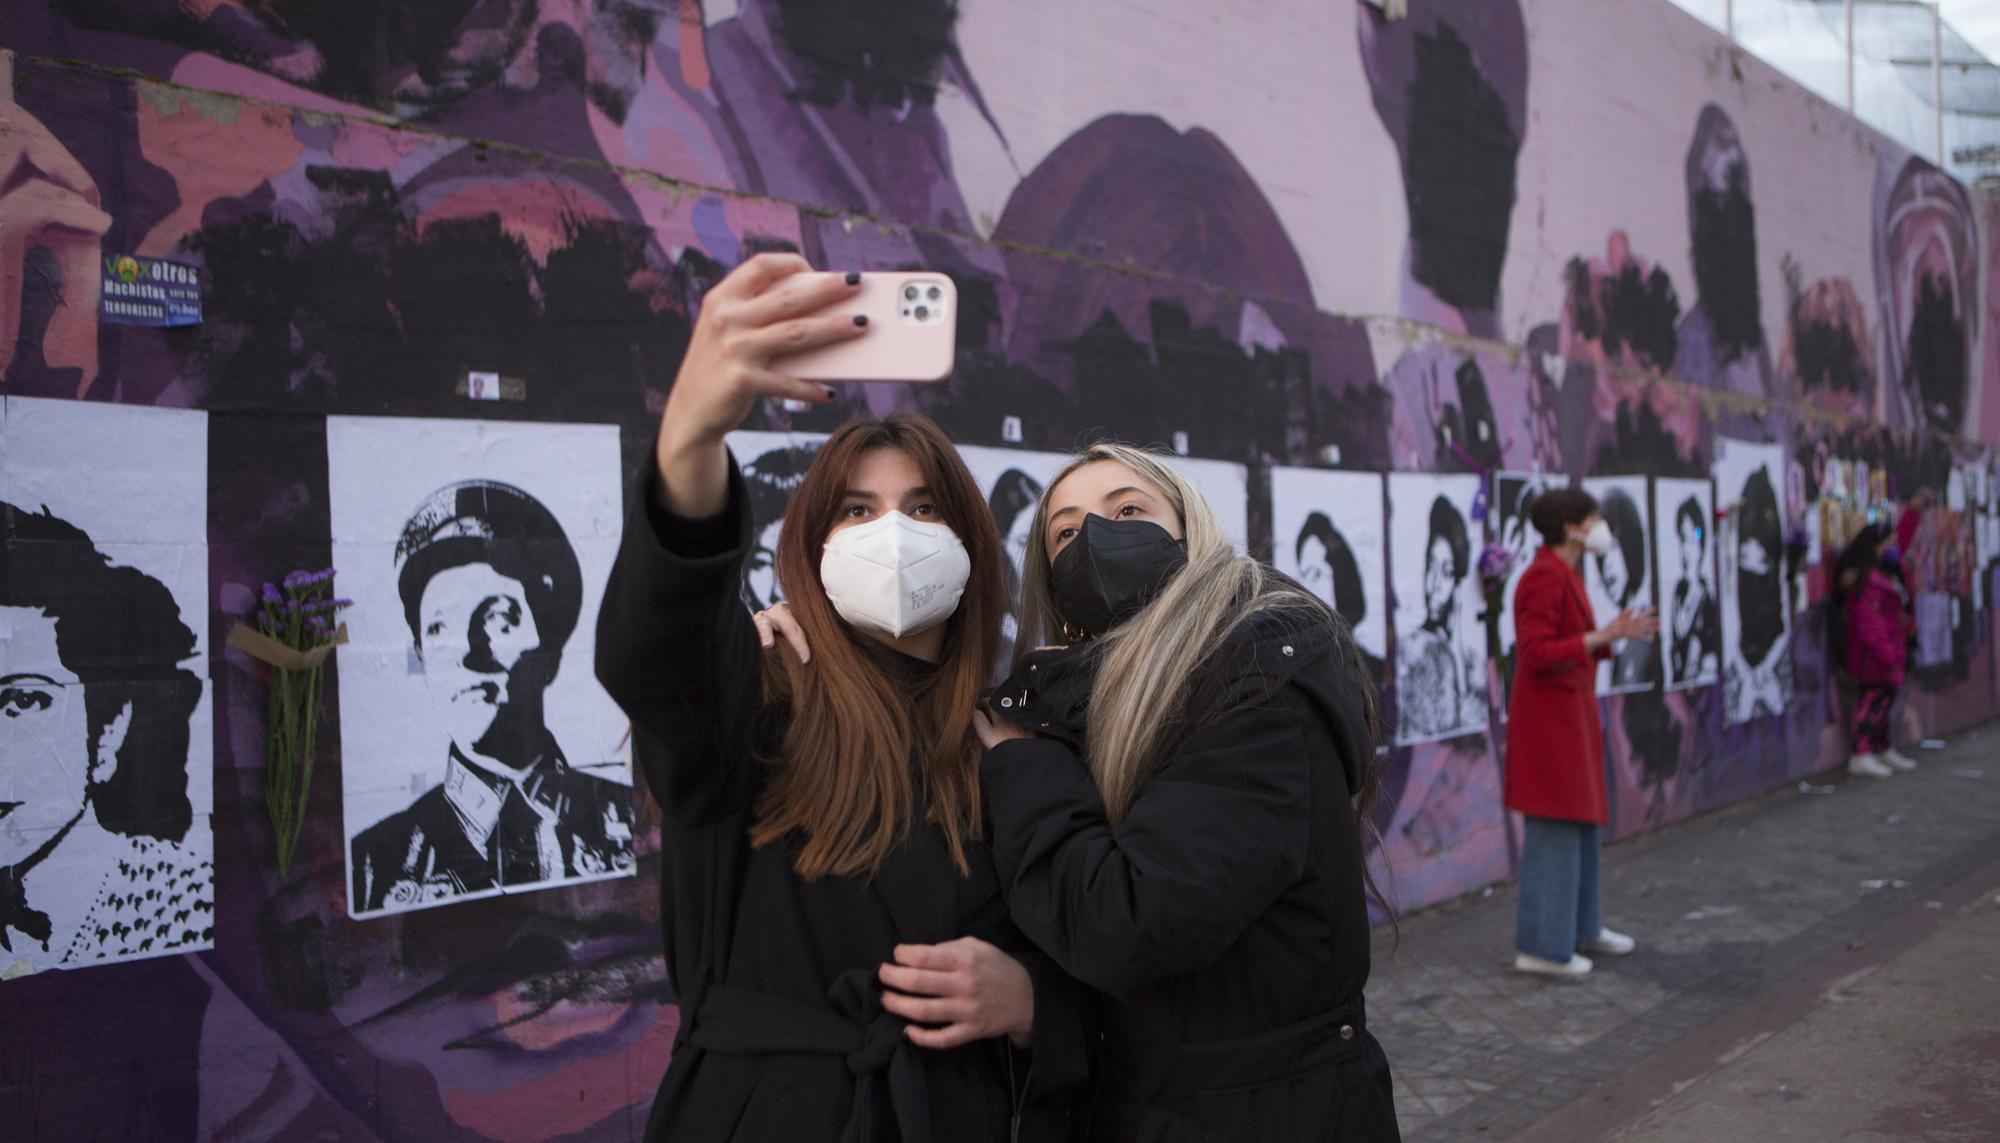 Concentración en el mural feminista de Ciudad Lineal el 8M - 8